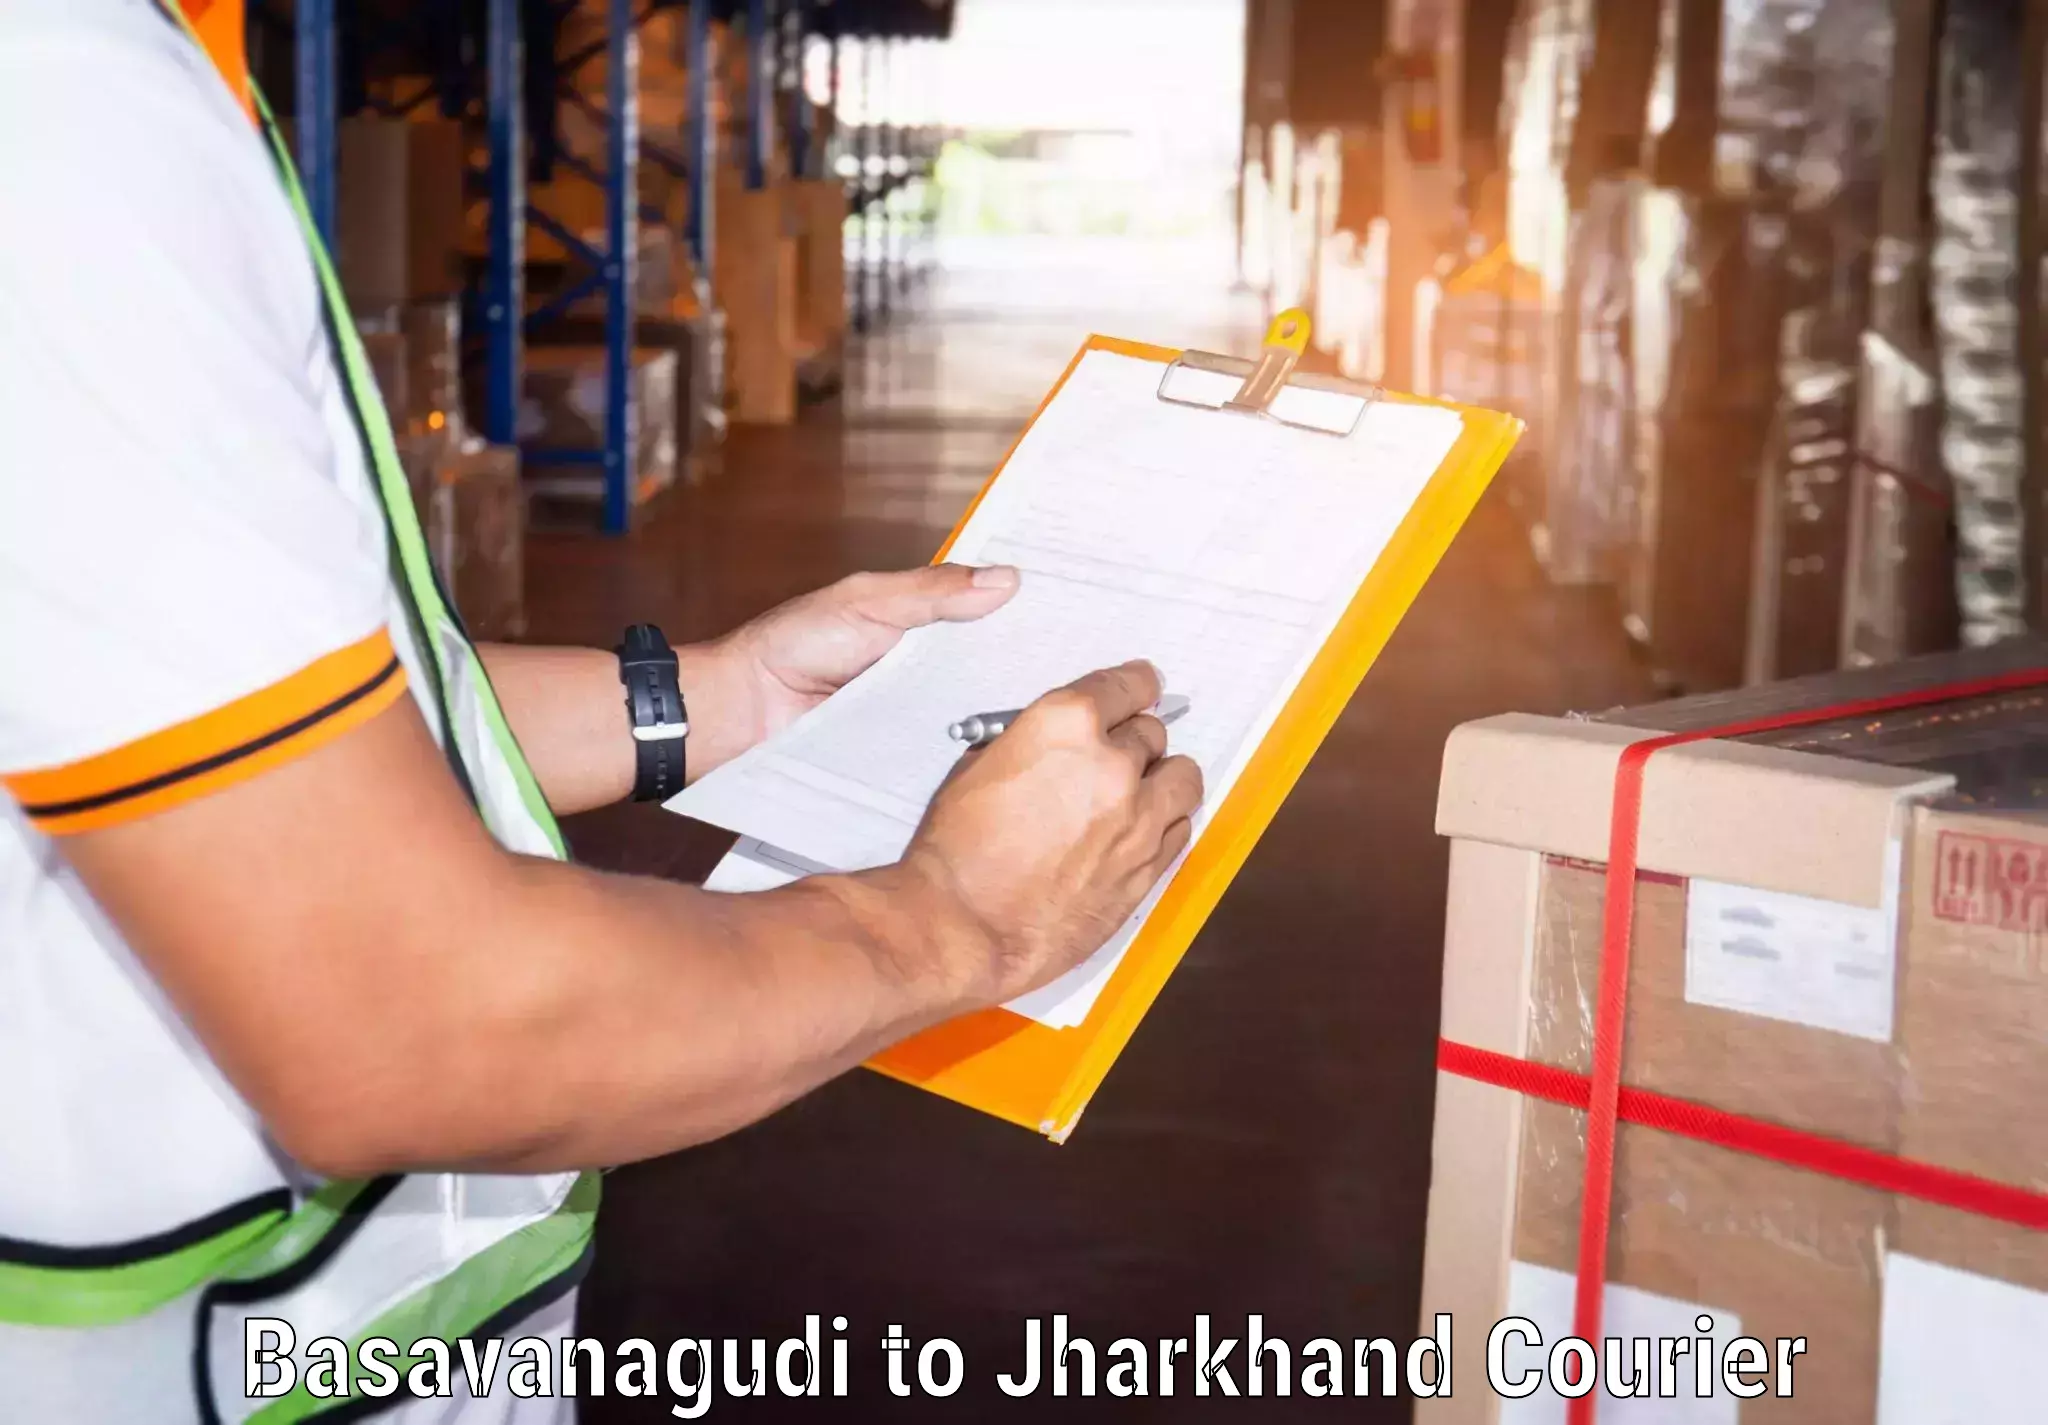 Efficient parcel service Basavanagudi to Jamshedpur